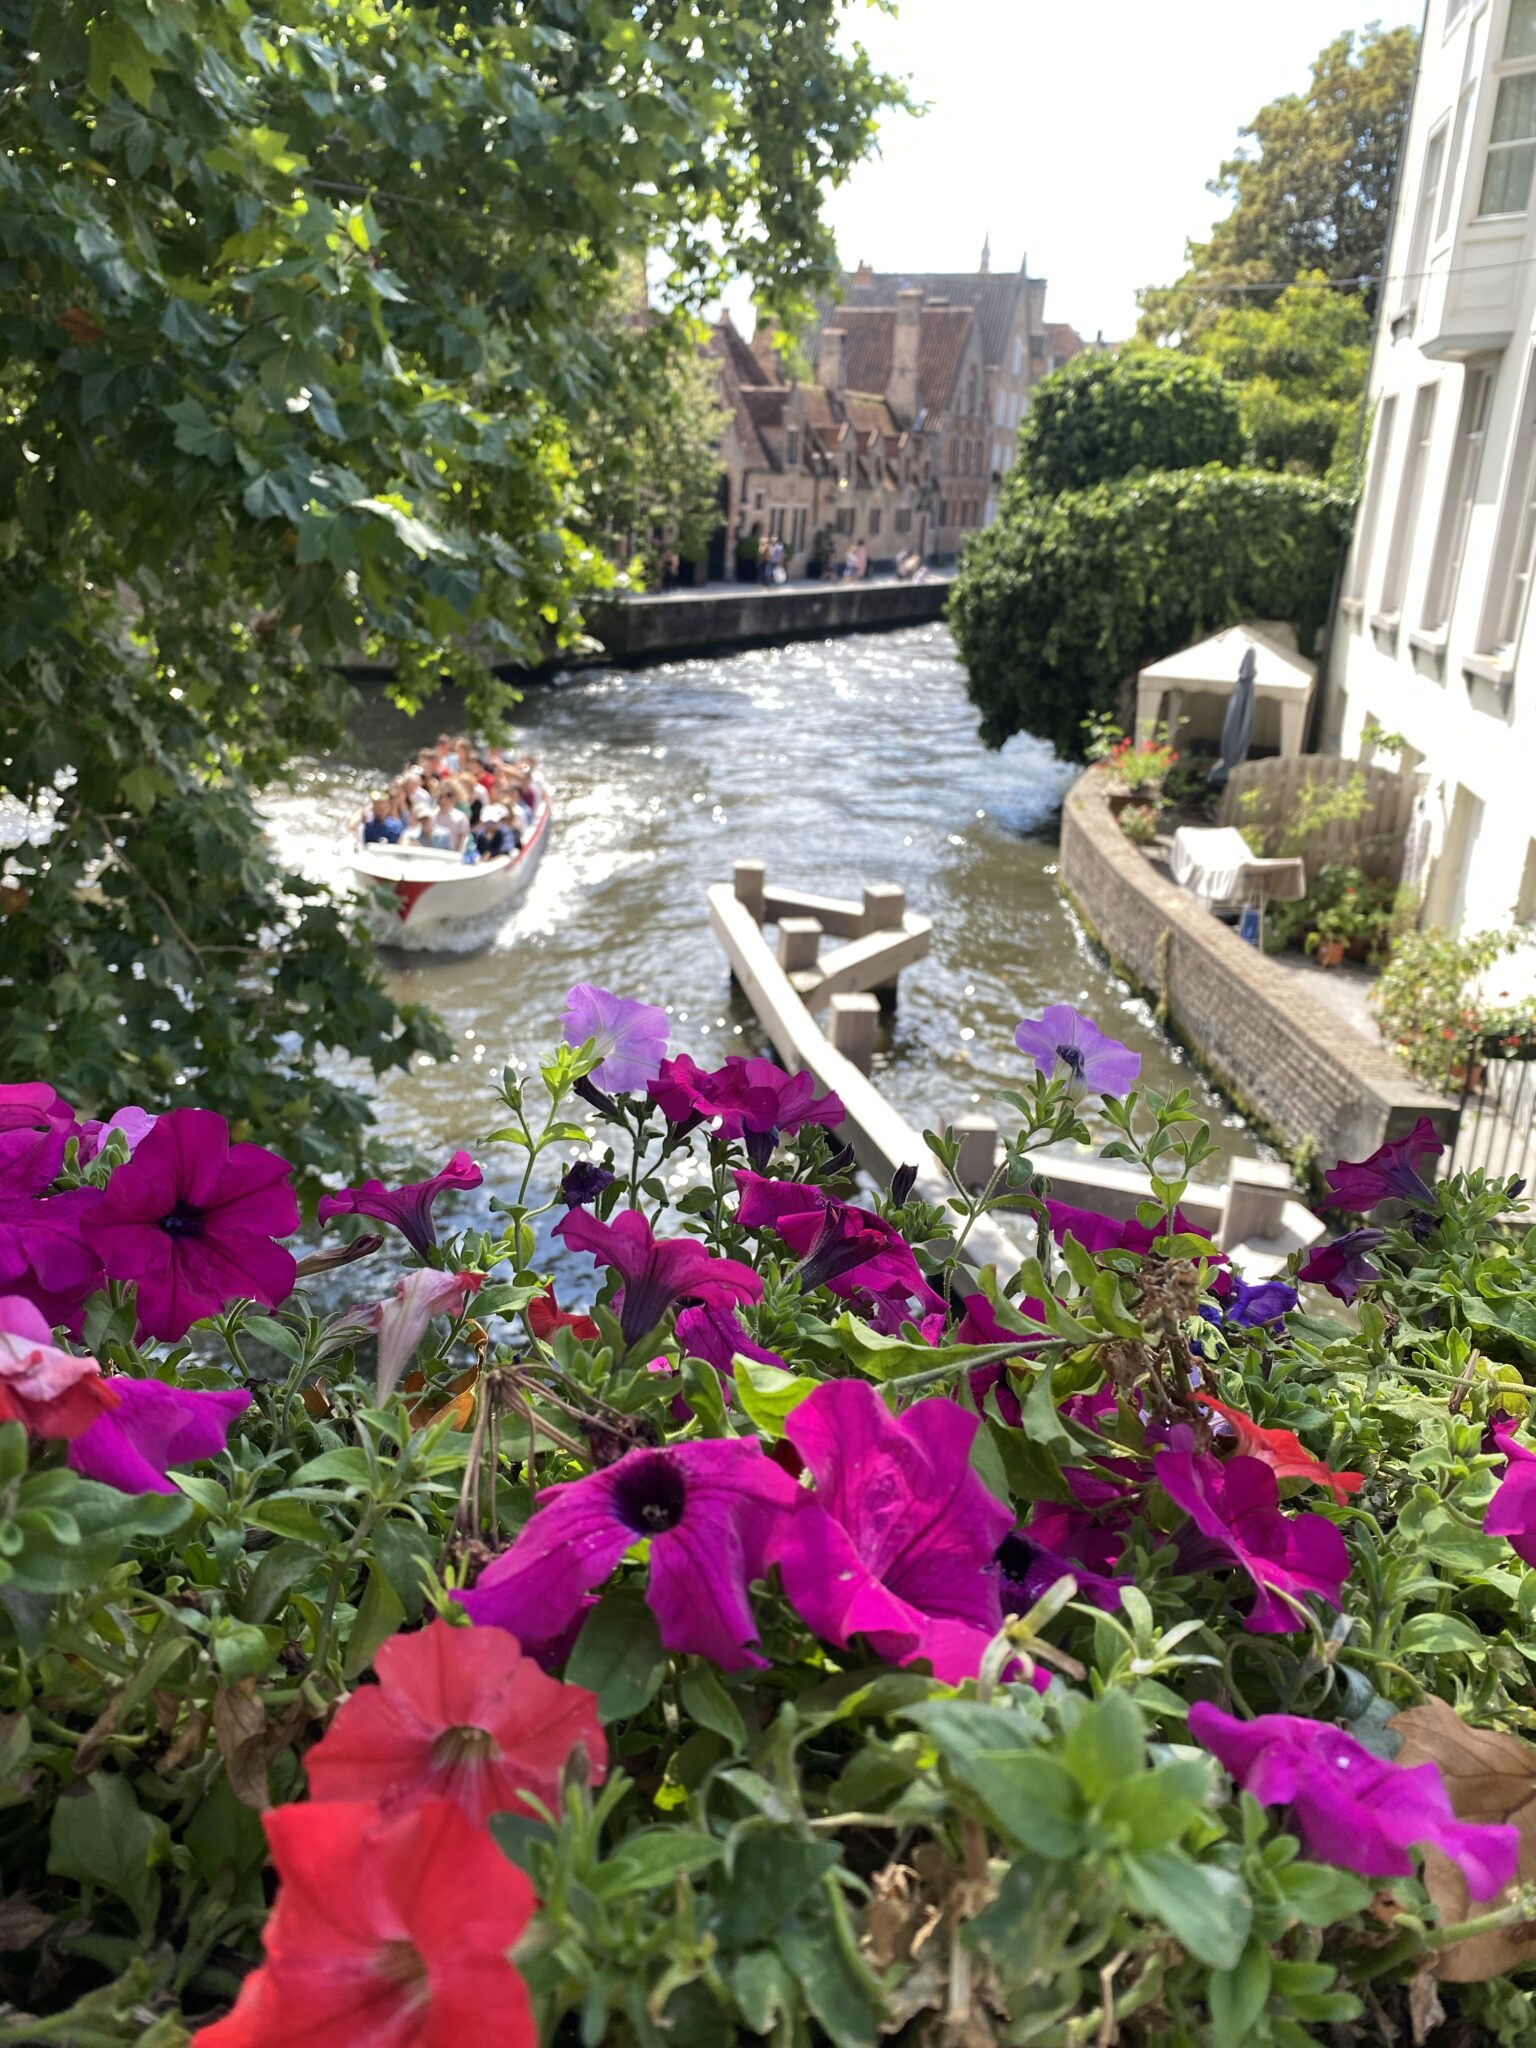 Blick auf eine Gracht mit kleinem Boot, in dem Personen sitzen, im Vordergrund bunte Blumen. Sonnenschein. 